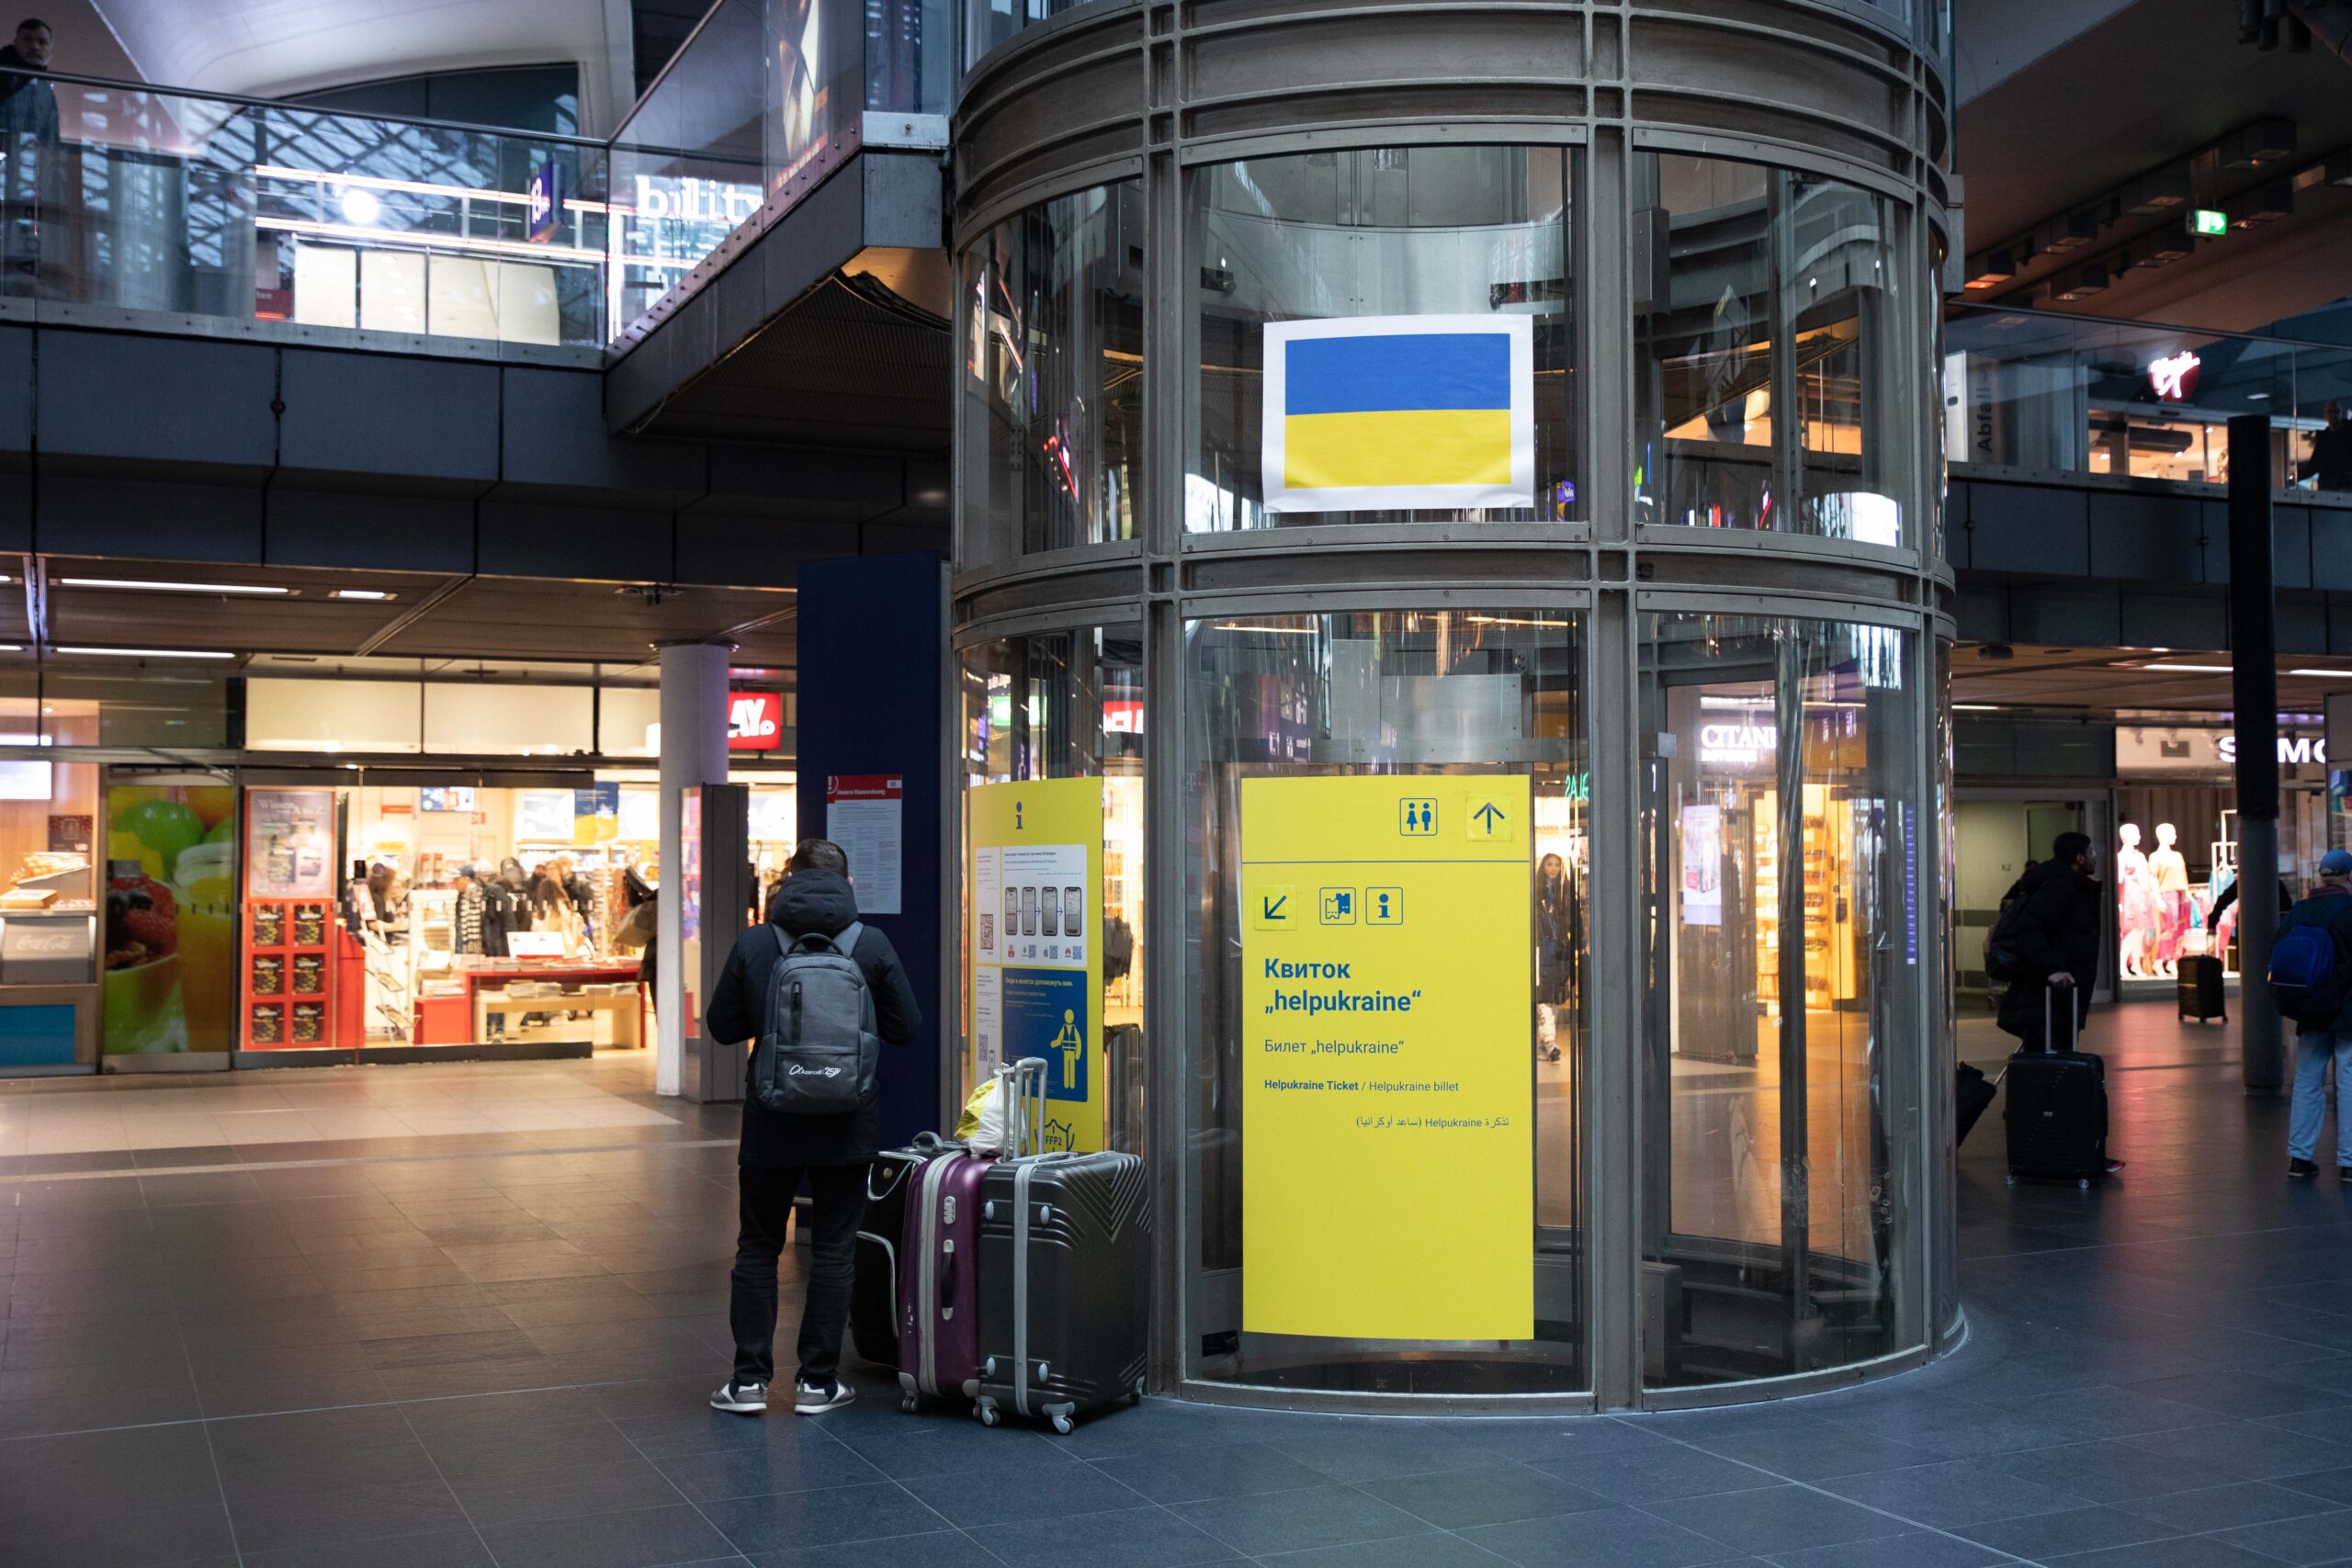 Ein gläserner Fahrstuhlschacht im Herzen des Berliner Hauptbahnhofs. Daran befestigt ist ein gelbes Plakat mit der Aufschrift “helpukraine” und einer Wegbeschreibung in kyrillischen Schriftzeichen.